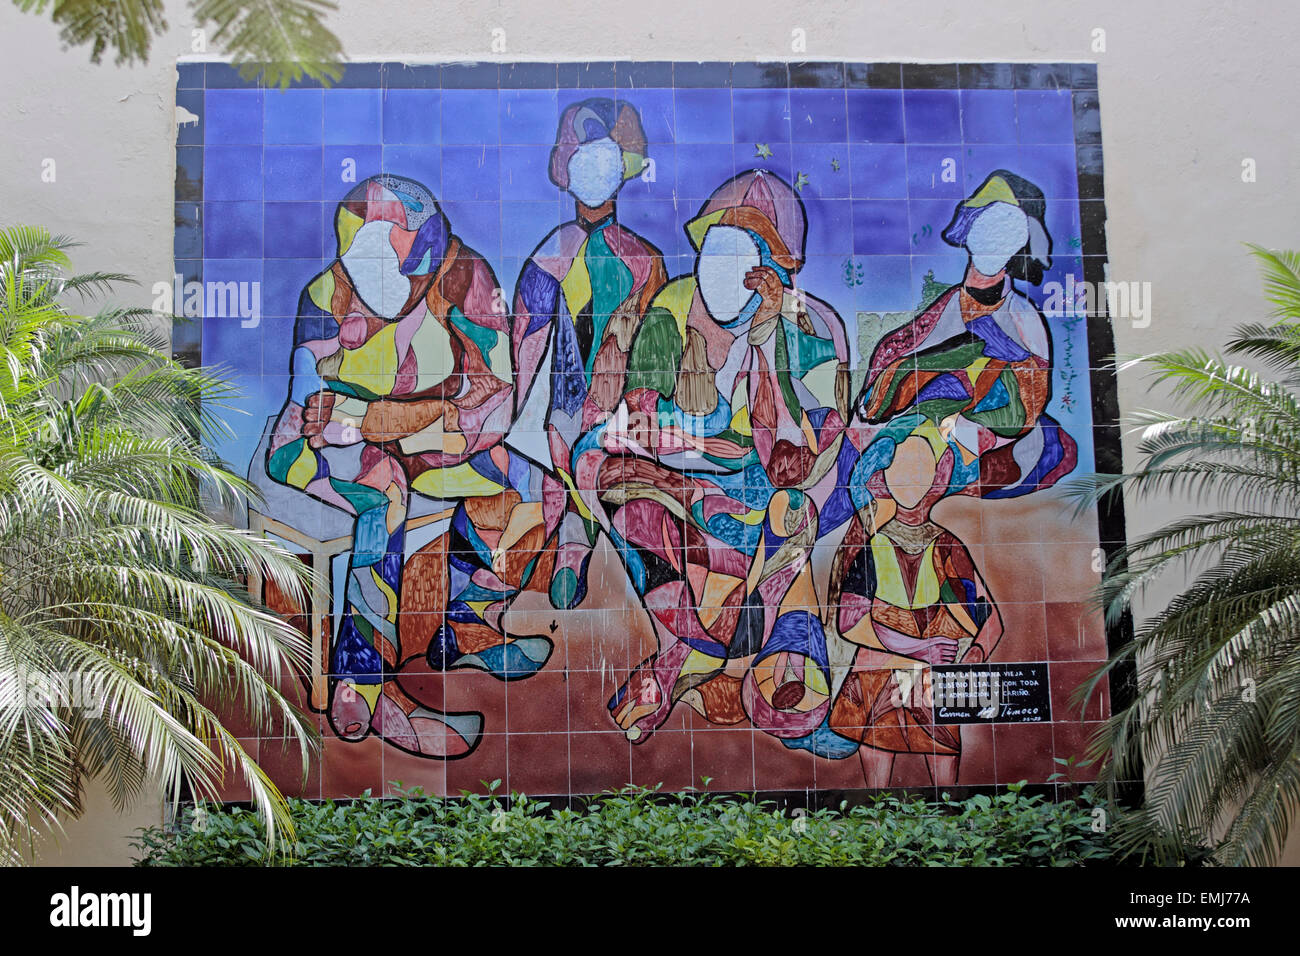 Bunte Fliesen Mosaik an der Wand Park Altstadt Habana Vieja Havanna Kuba Stockfoto